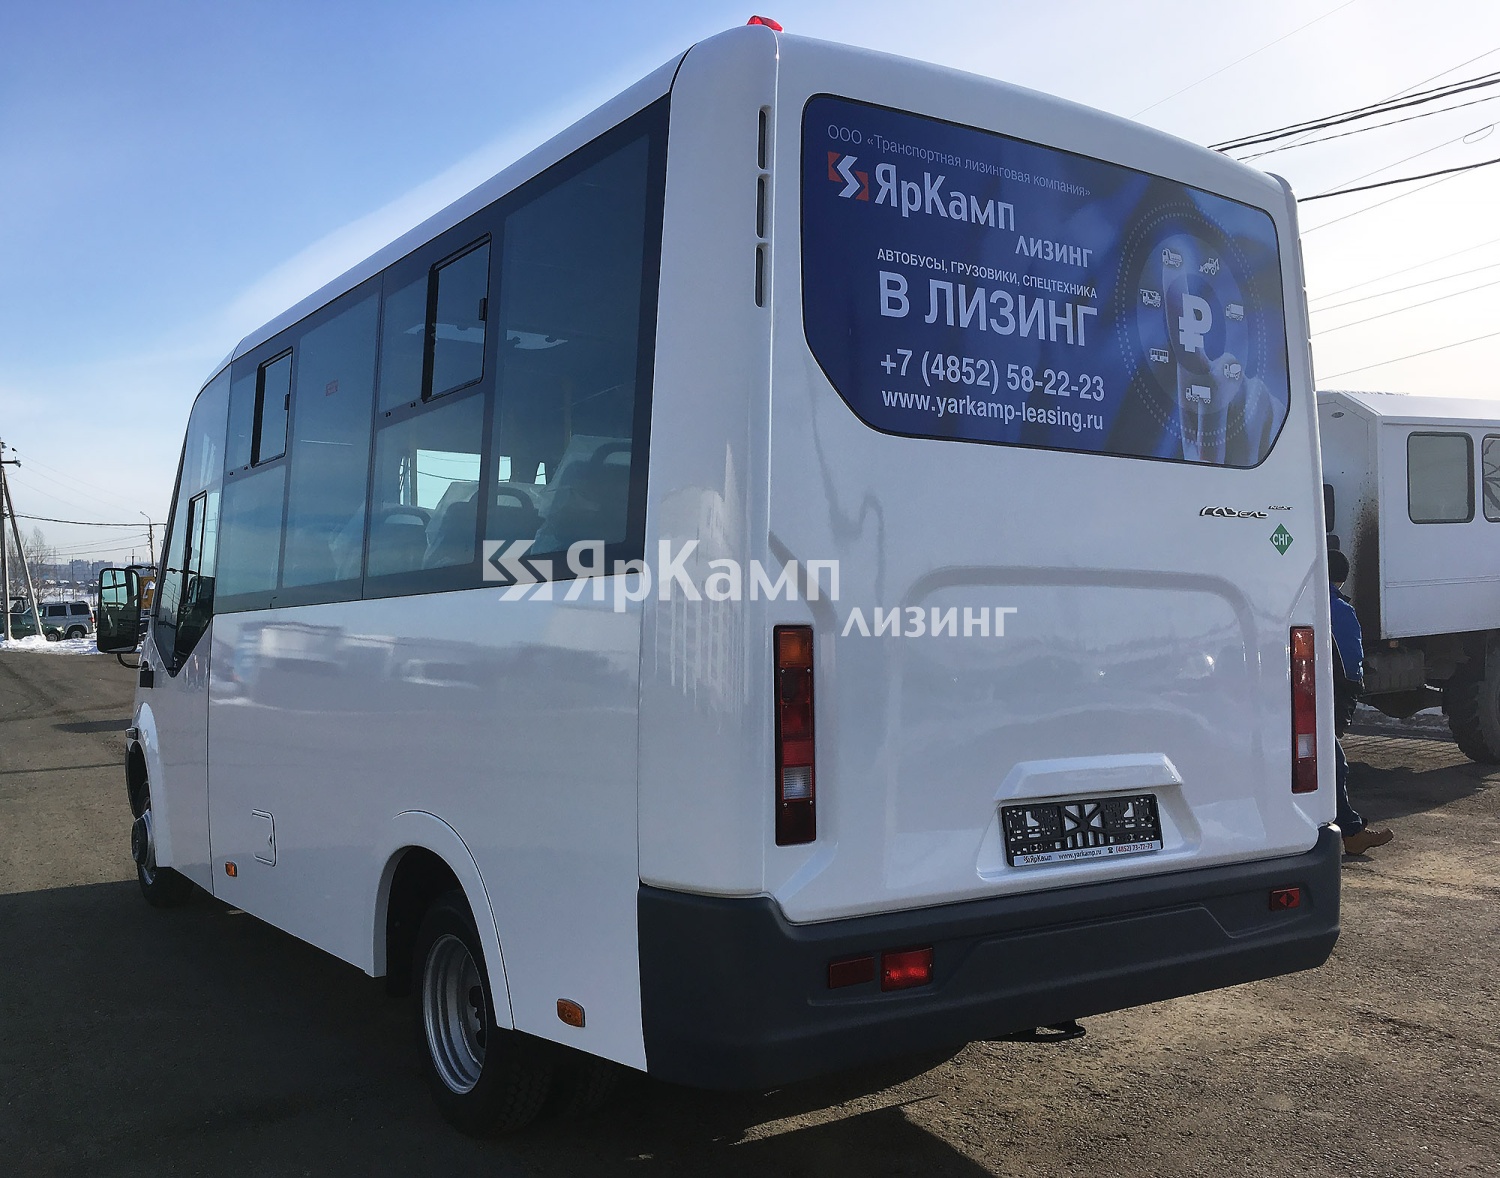 Автобусы на базе шасси ГАЗель NEXT Citiline переданы в финансовую аренду